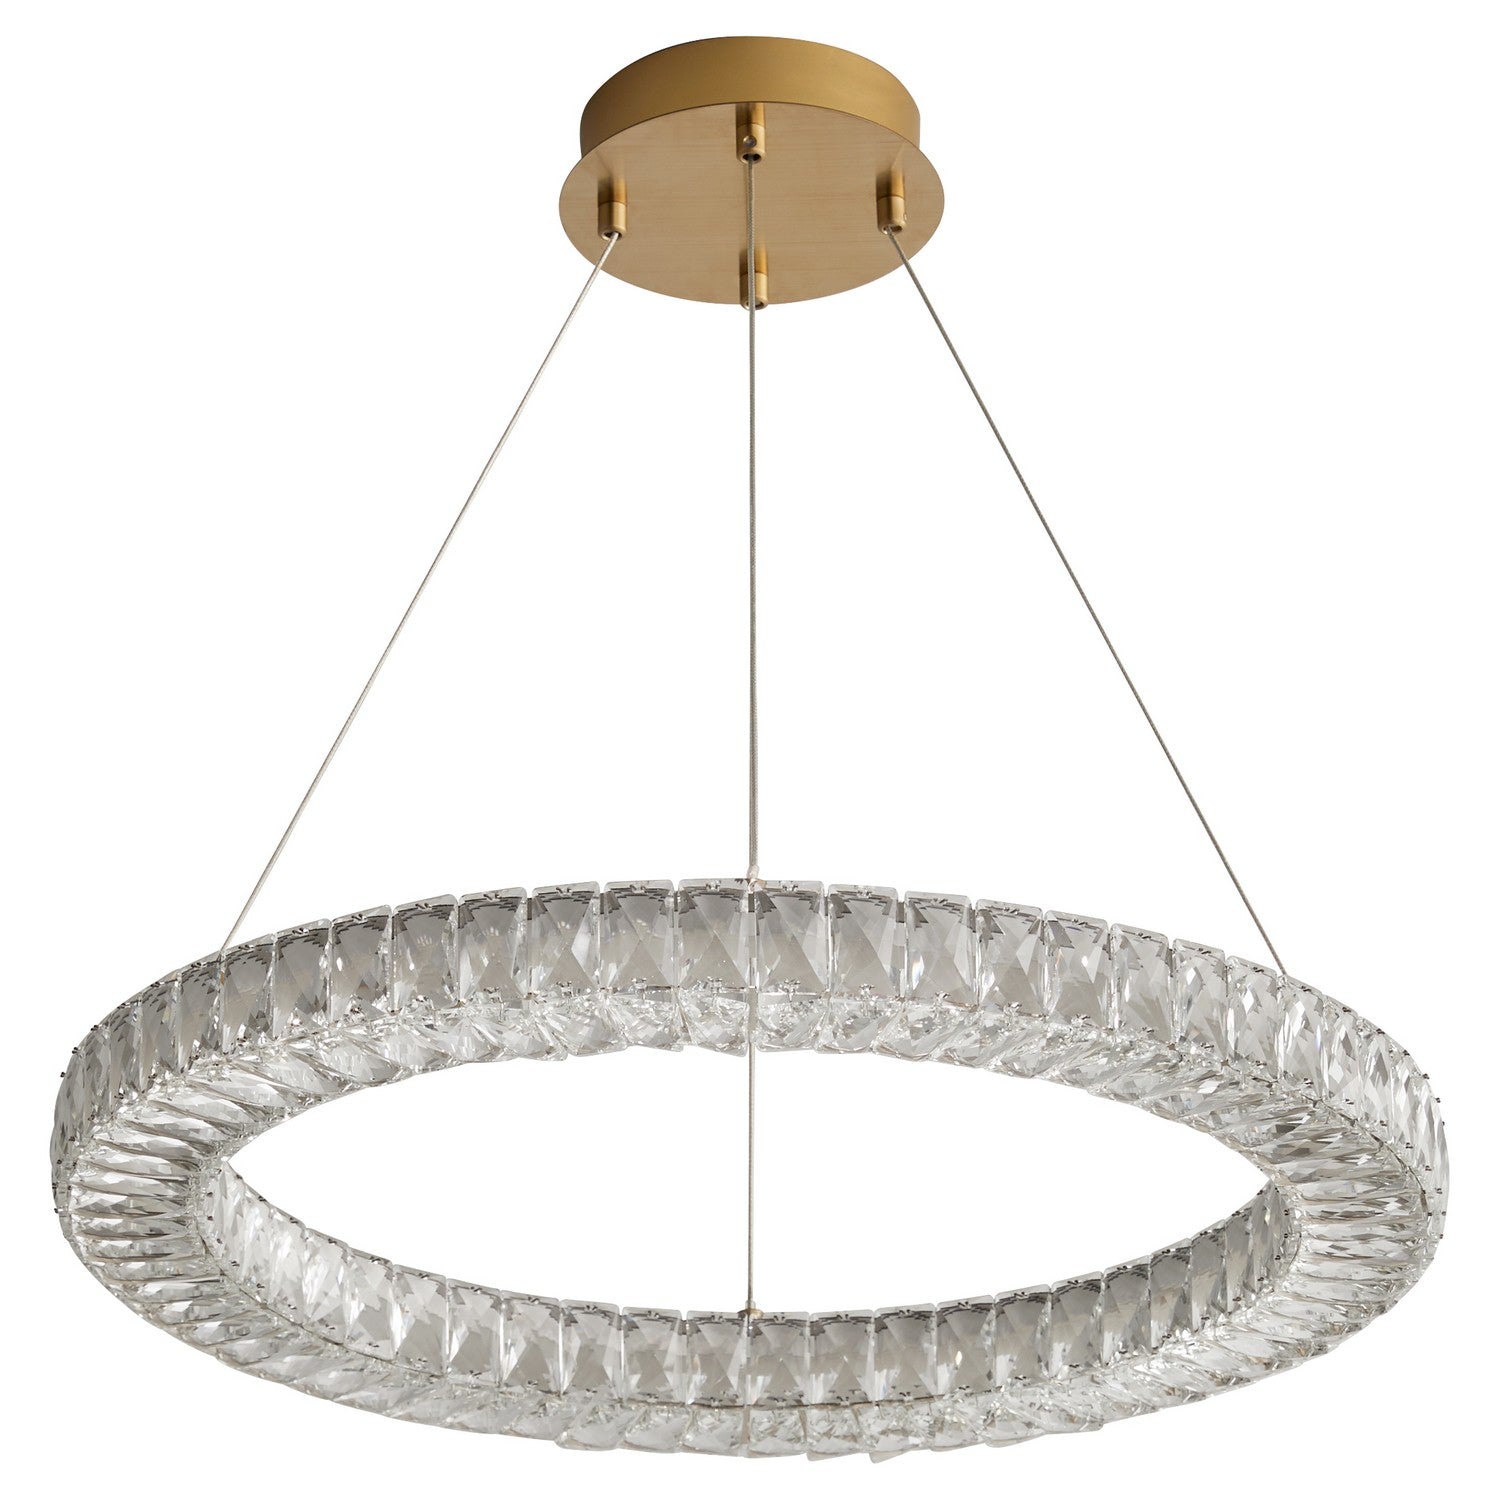 Oxygen Lighting - 3-874-40 - LED Pendant - Elan - Aged Brass